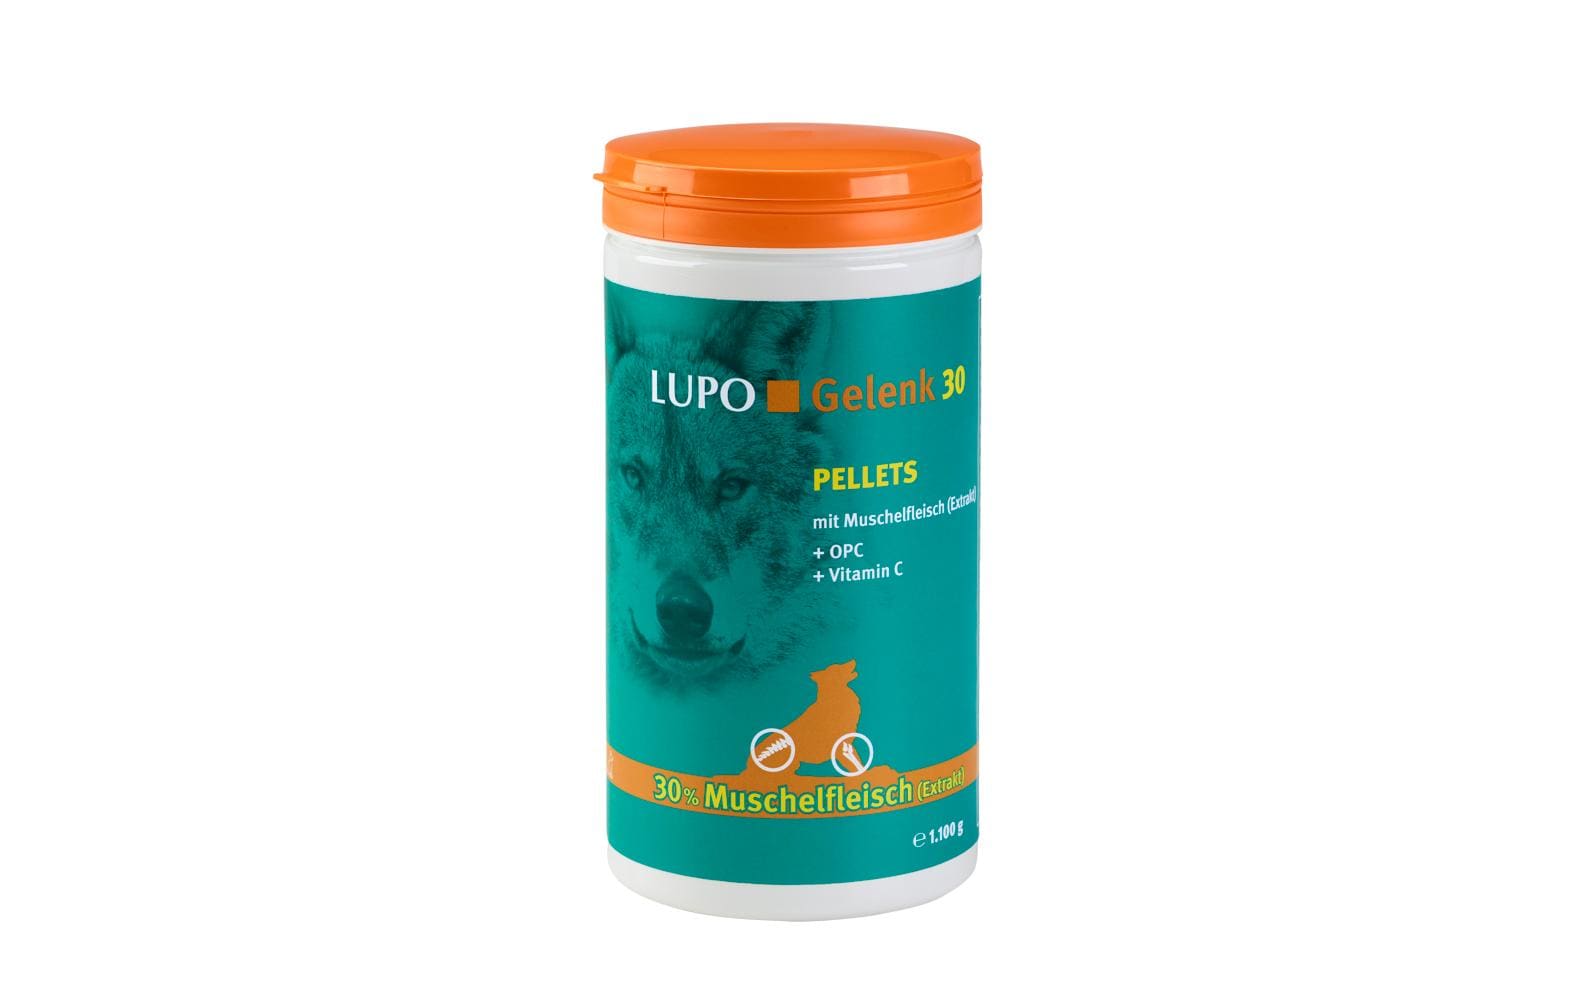 Luposan Hunde-Nahrungsergänzung Gelenk 30 Pellets, 1100 g